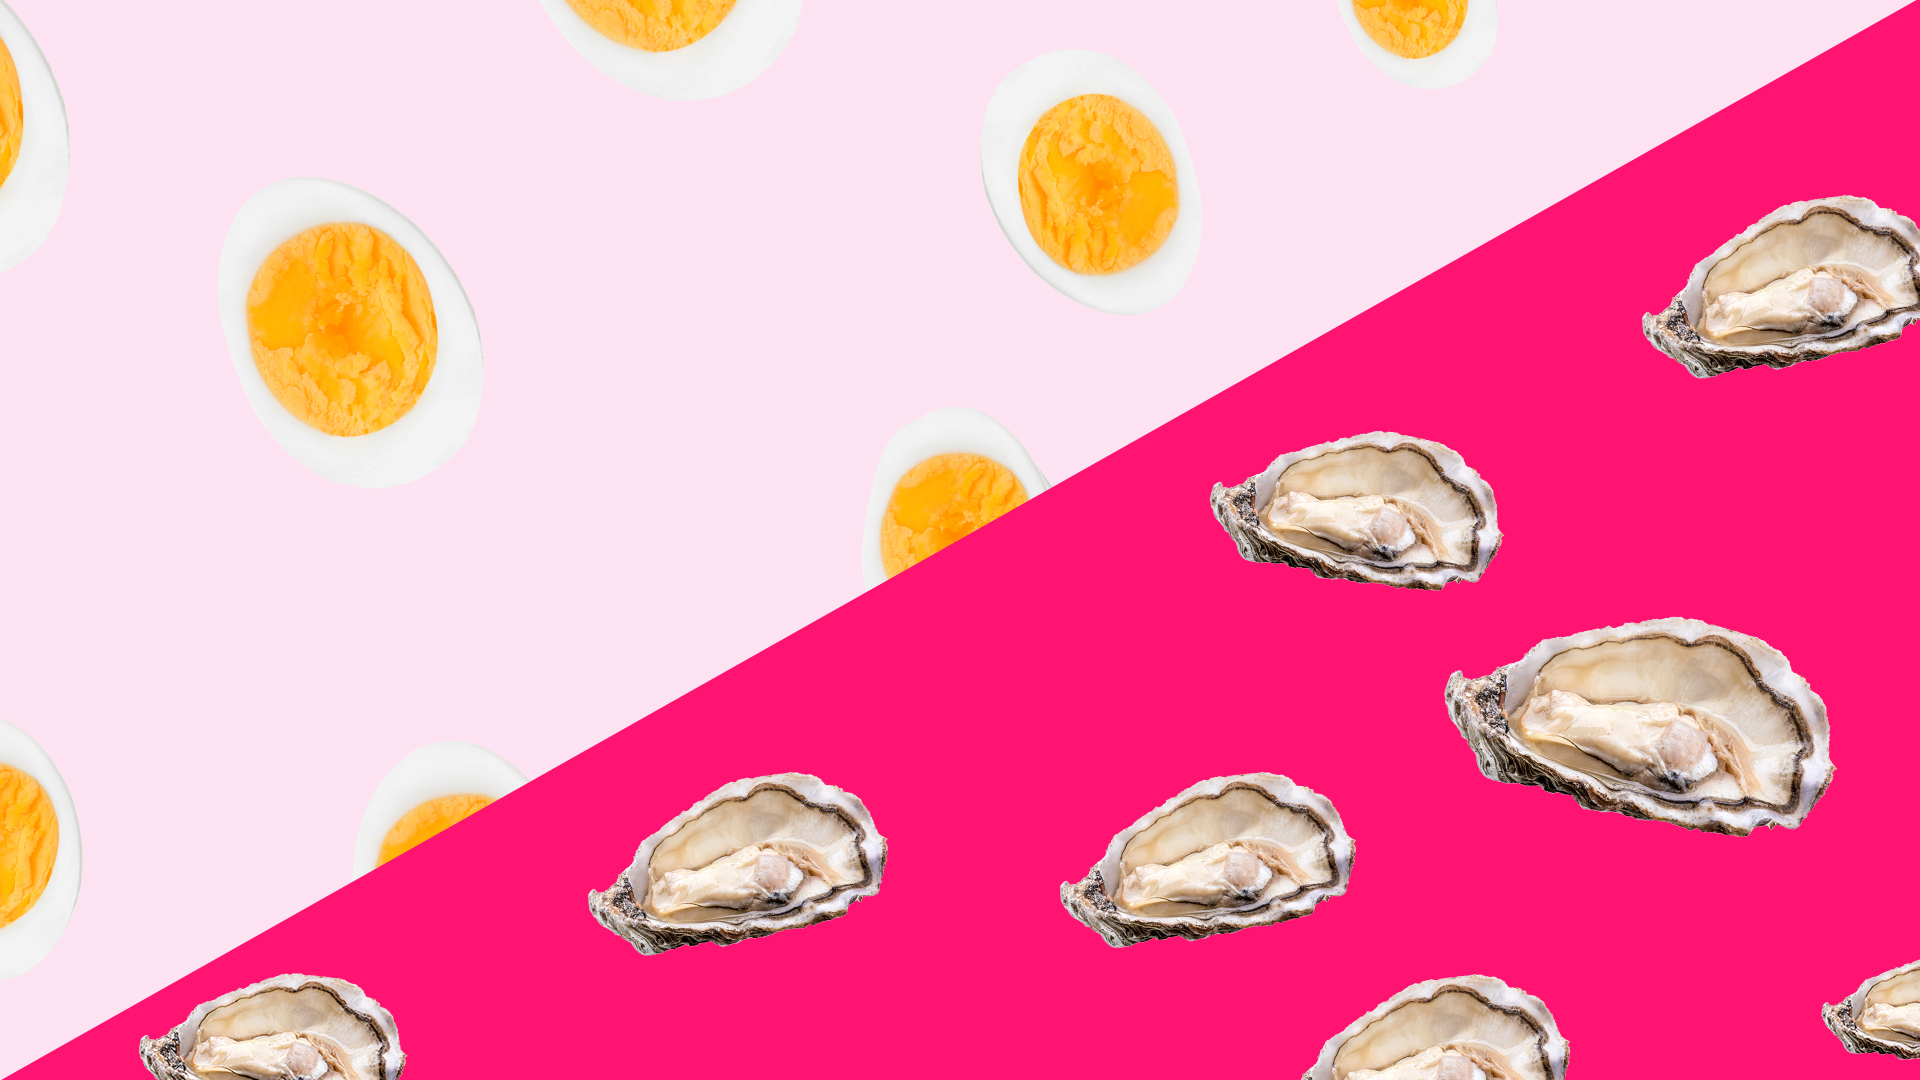 Welke voeding verhoogt libido van mannen? Eieren of oesters? &C x Voedingscentrum 